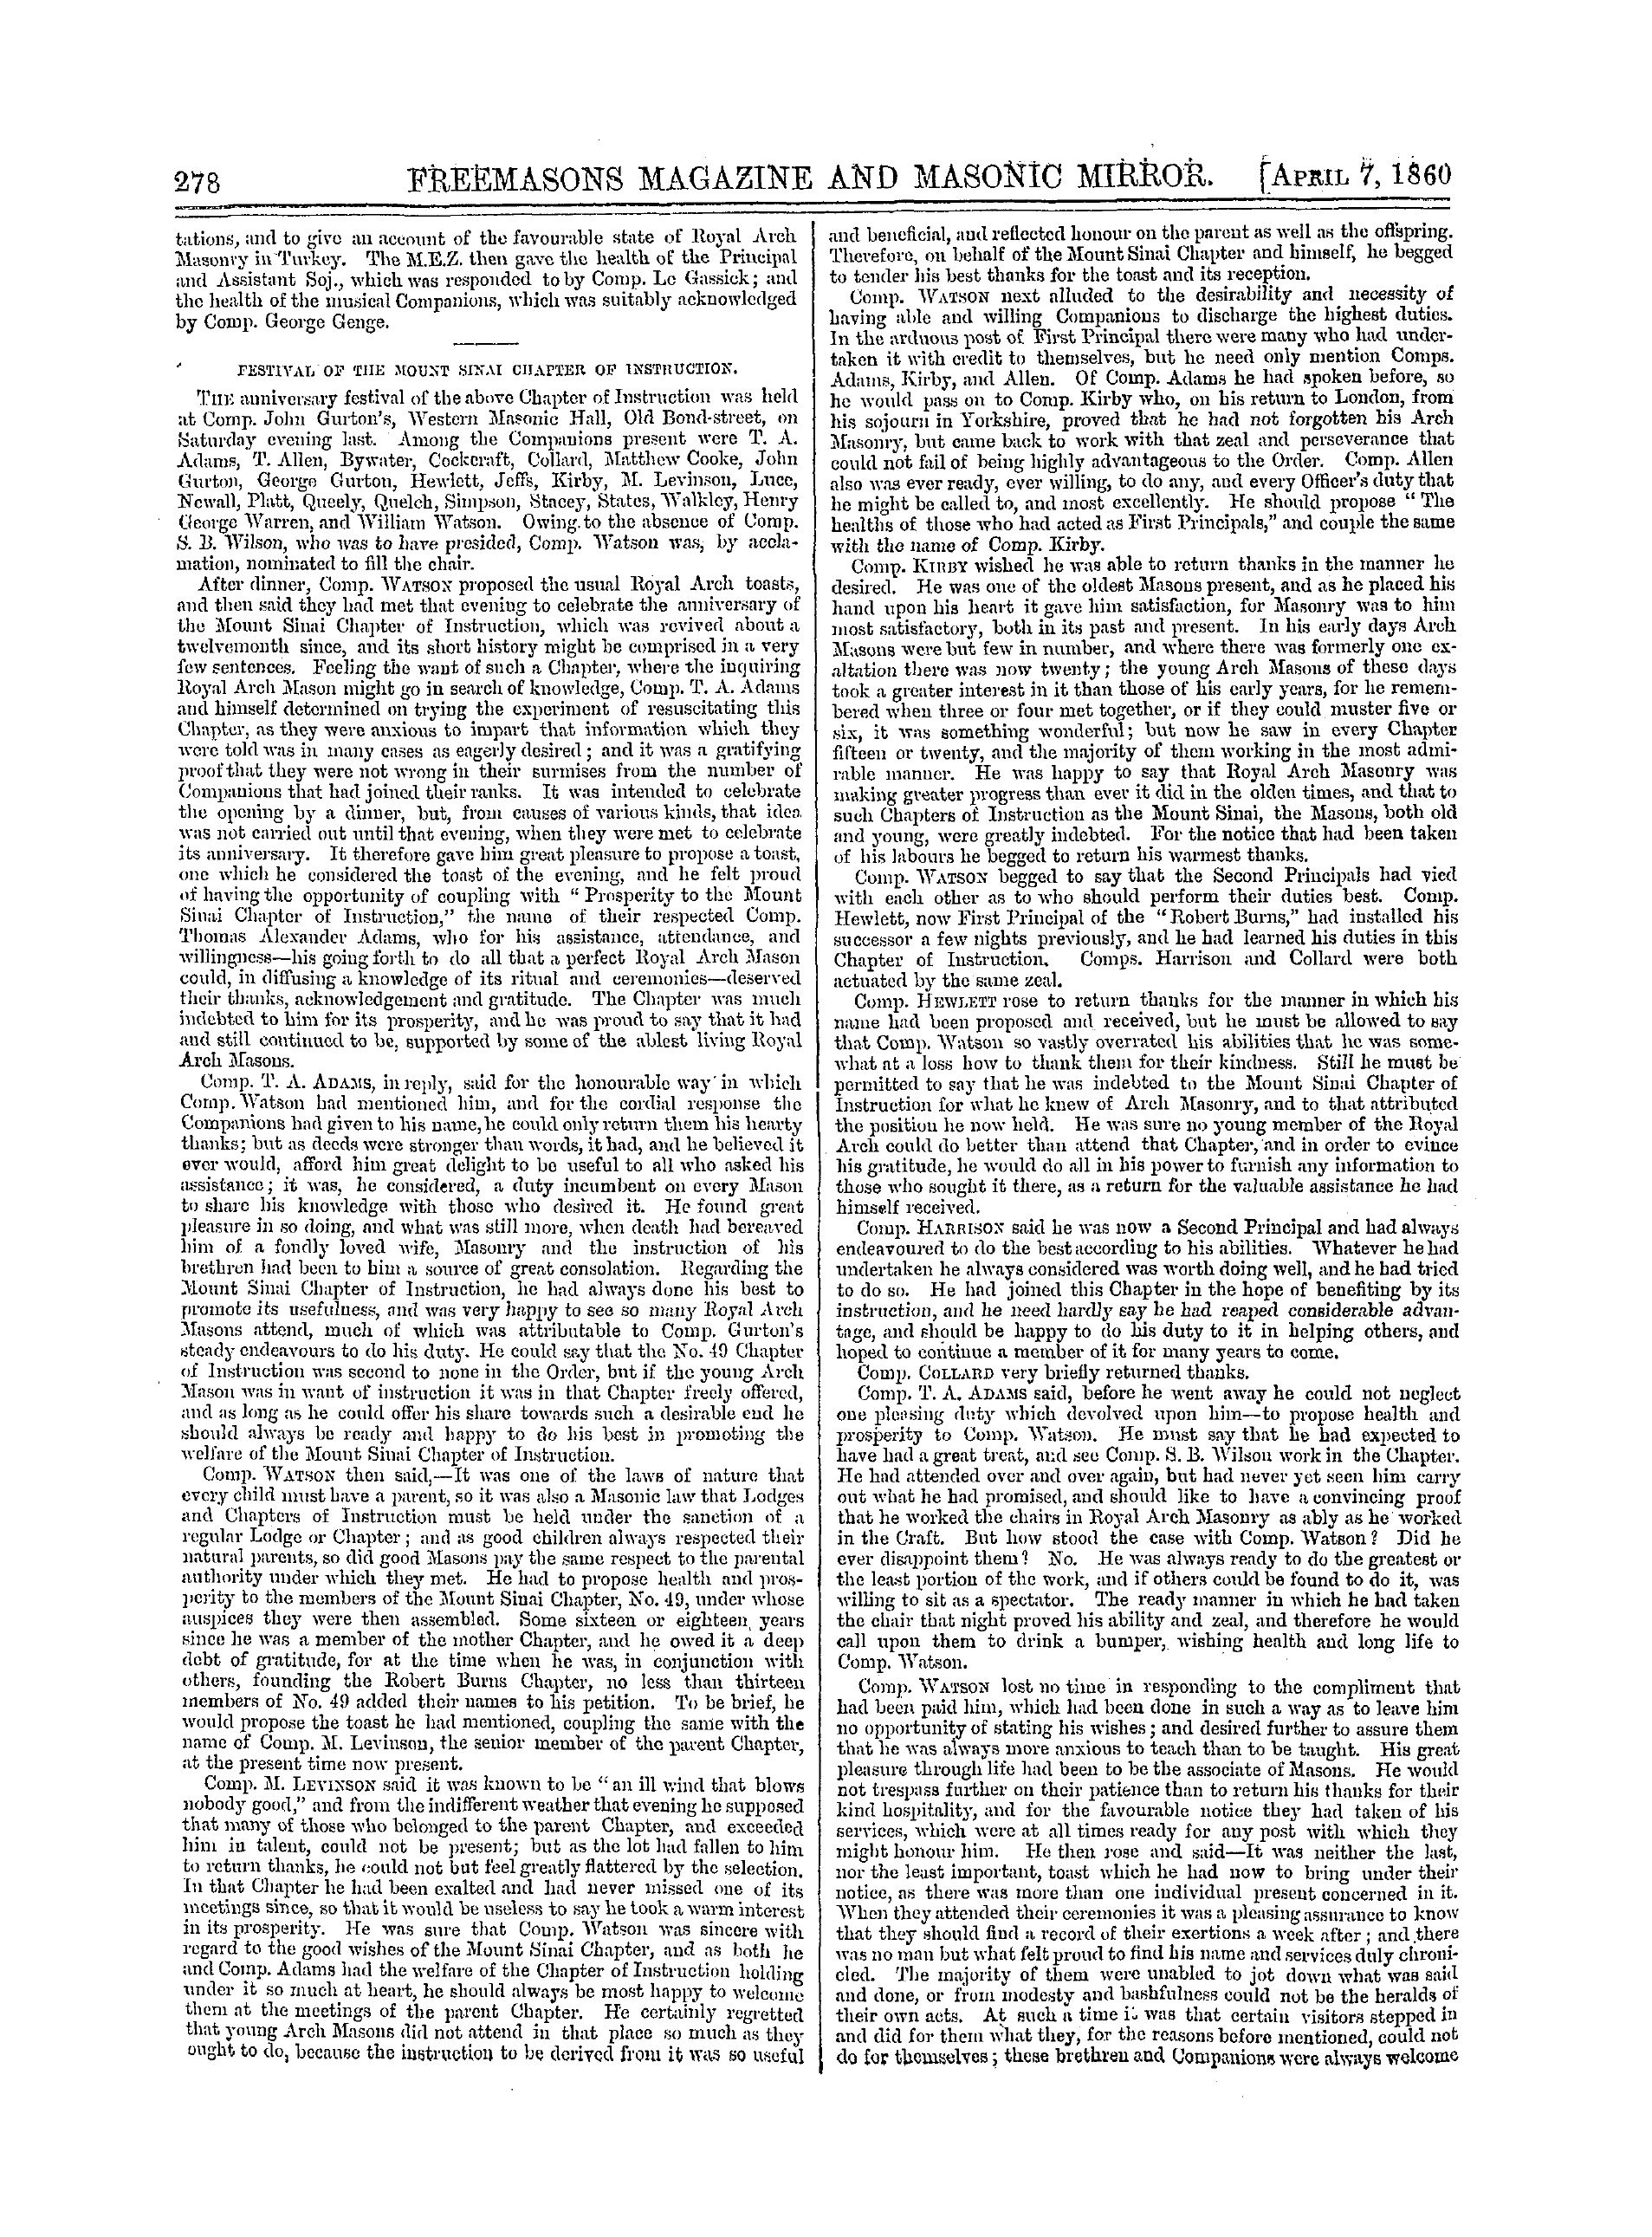 The Freemasons' Monthly Magazine: 1860-04-07: 18